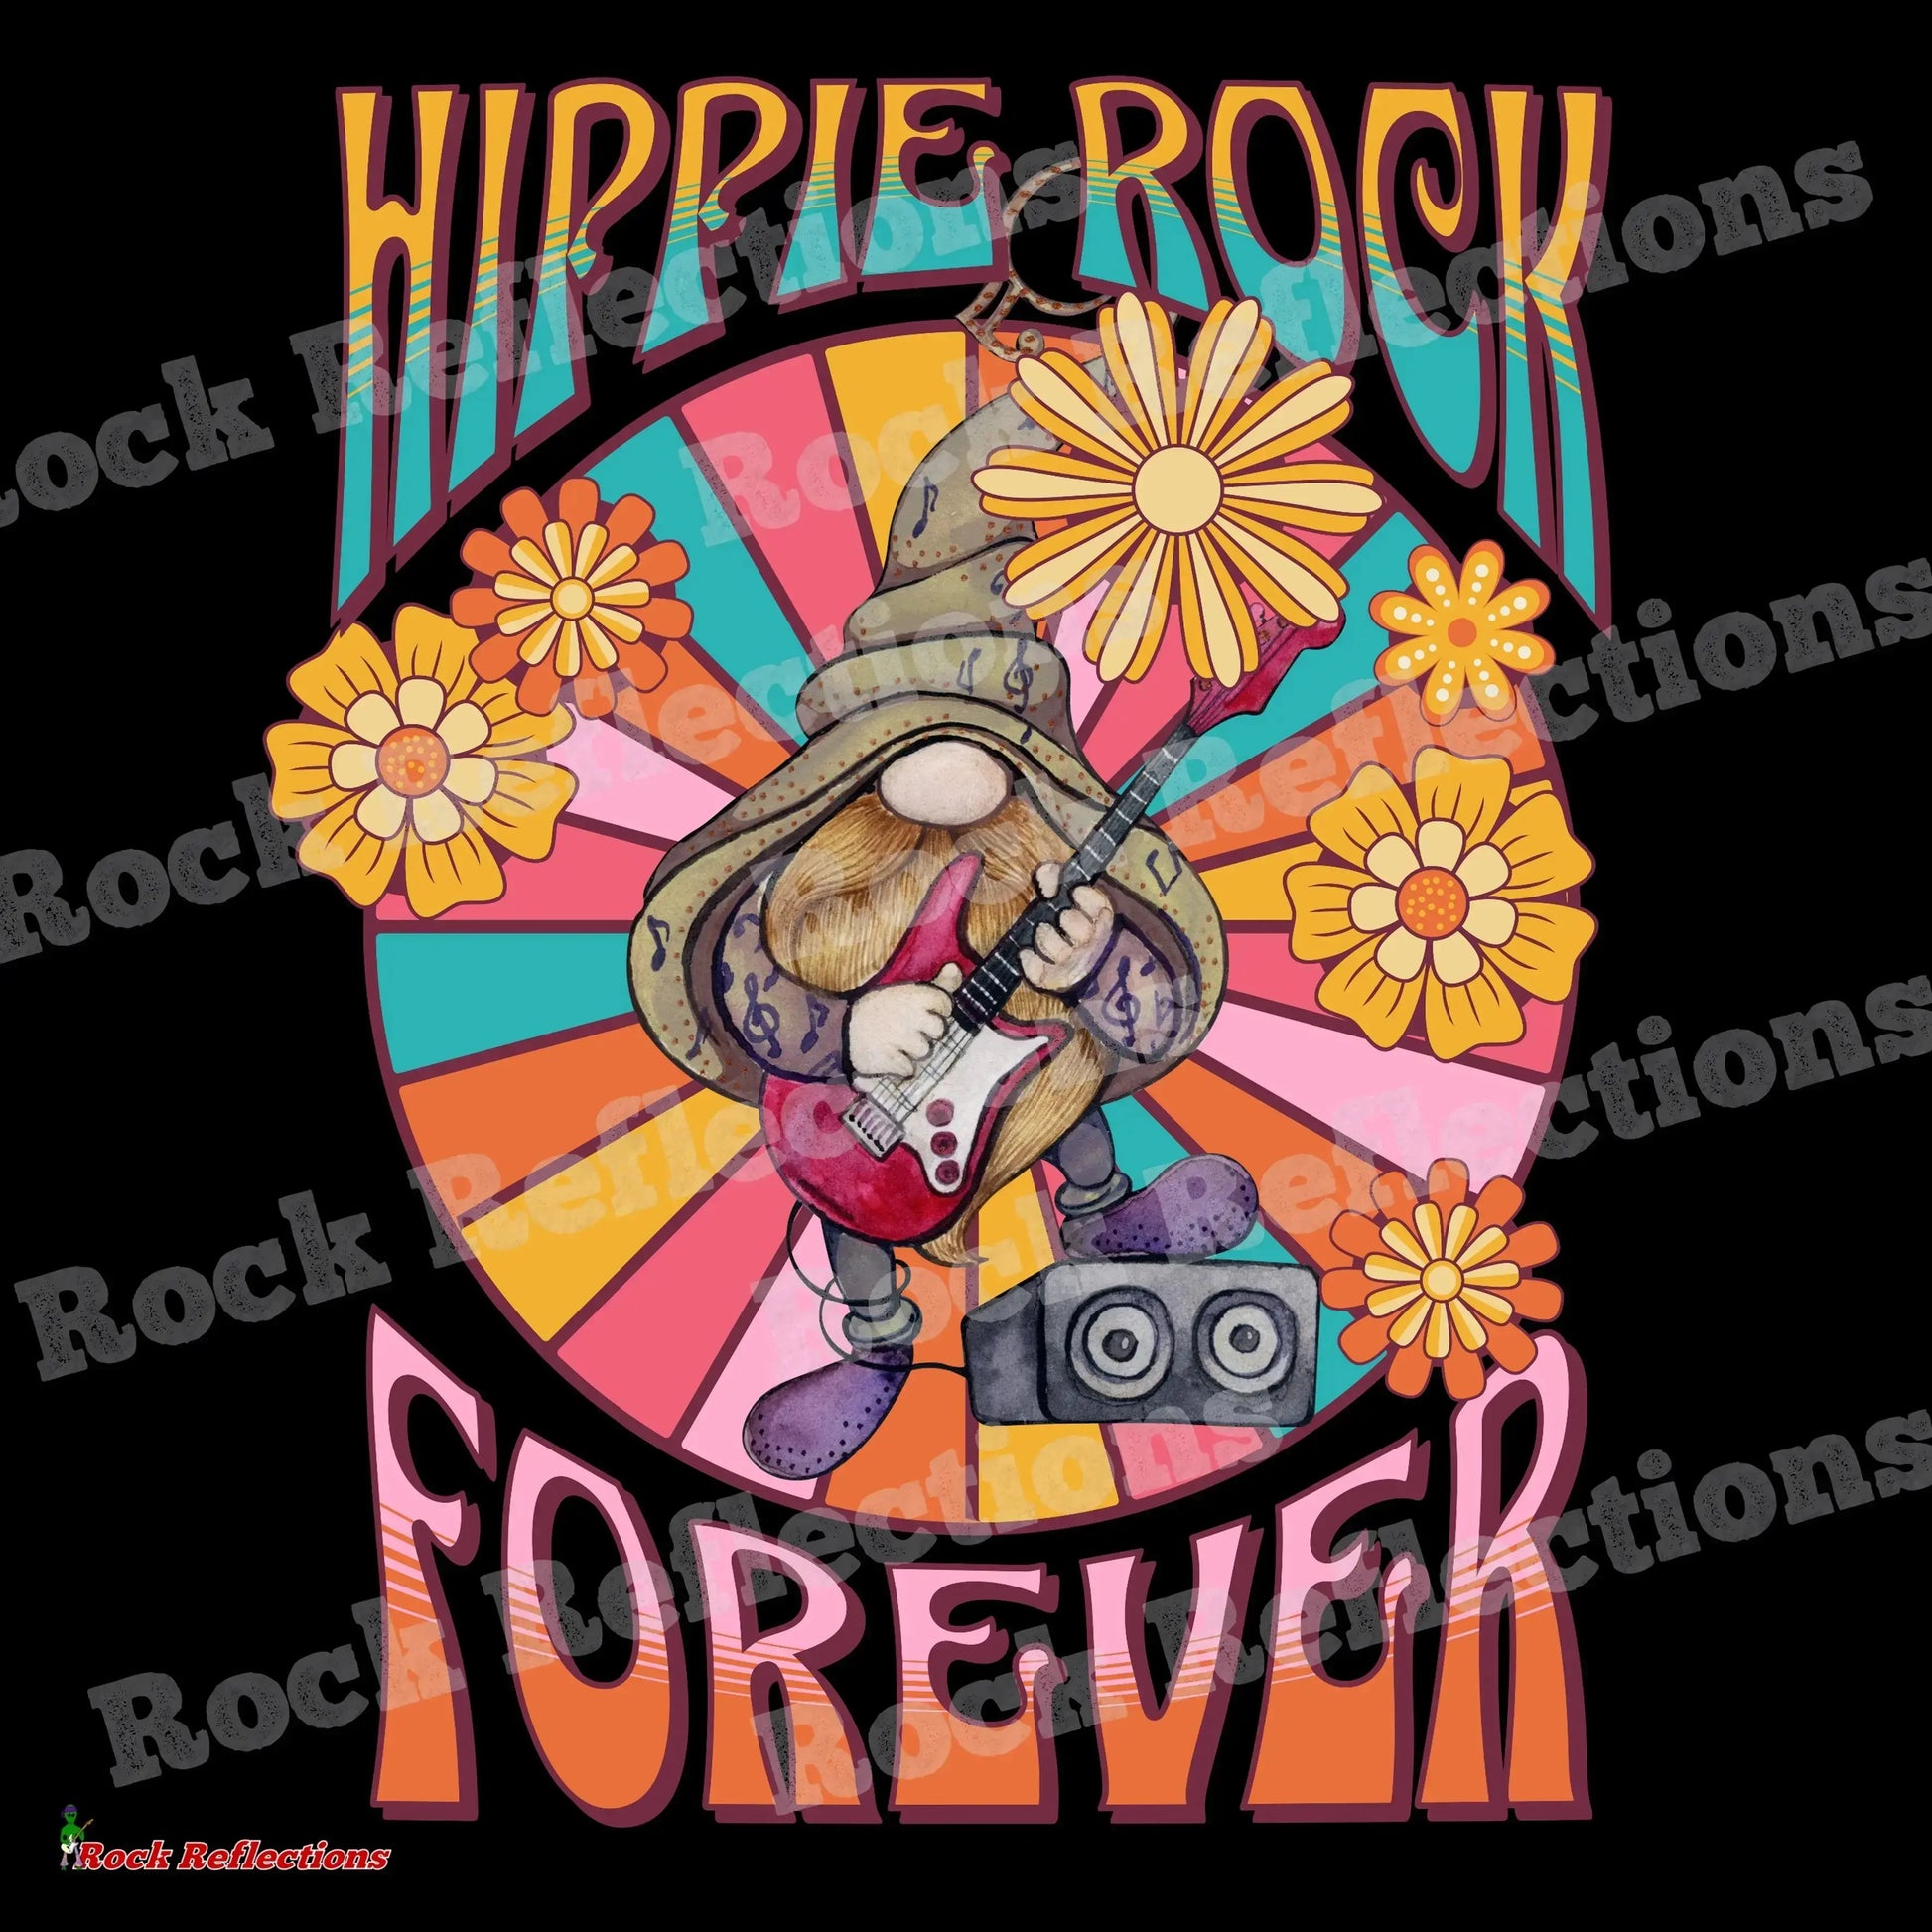 Hippie Rock Forever T-Shirt SPOD